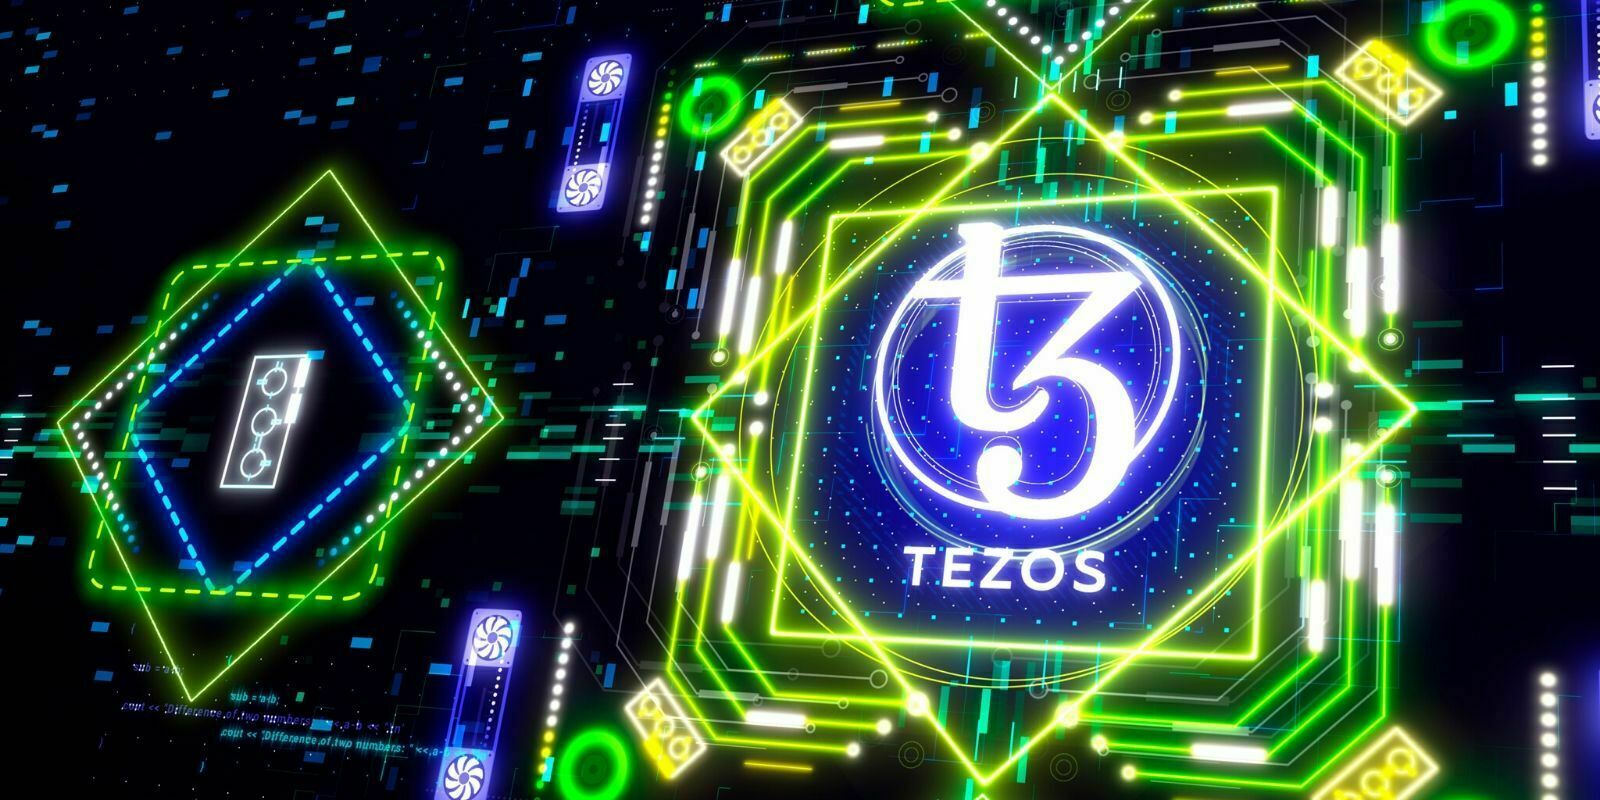 La fondation Tezos a octroyé 37 millions de dollars pour les développeurs de son écosystème